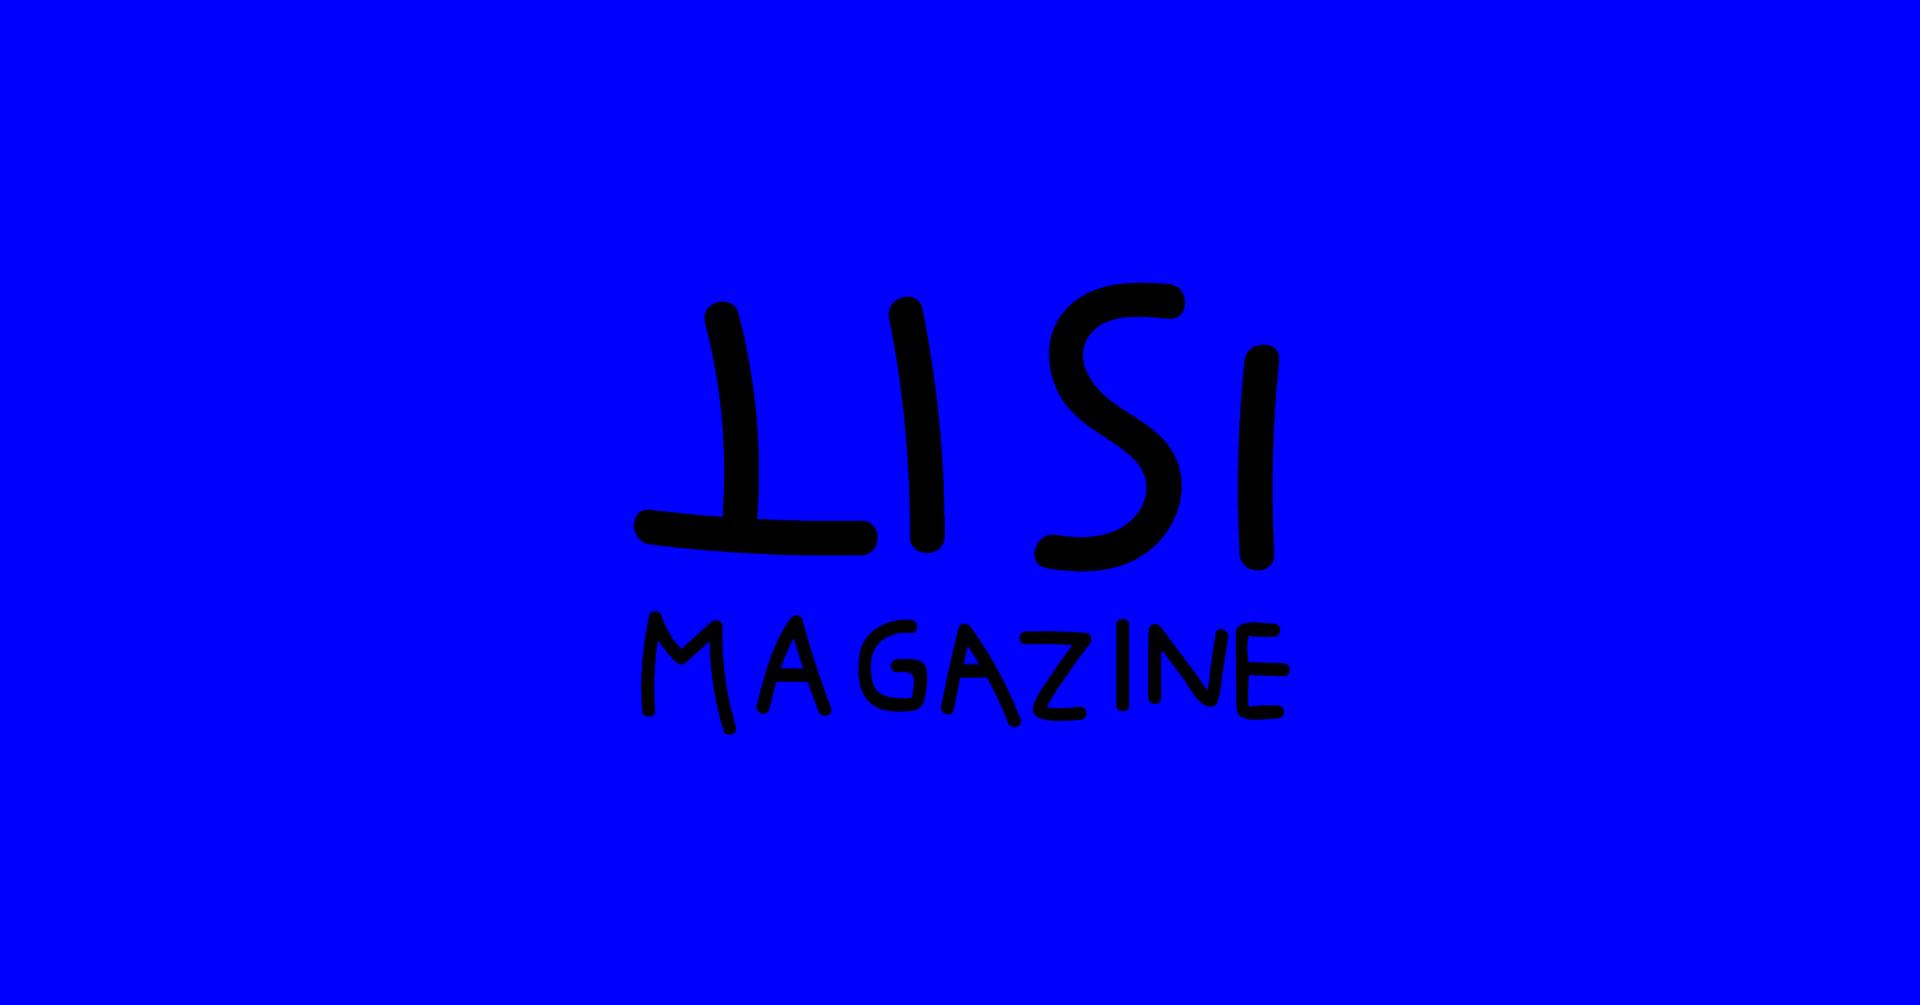 ISIT. Il magazine che supera i confini dell’editoria raccontato dai suoi fondatori